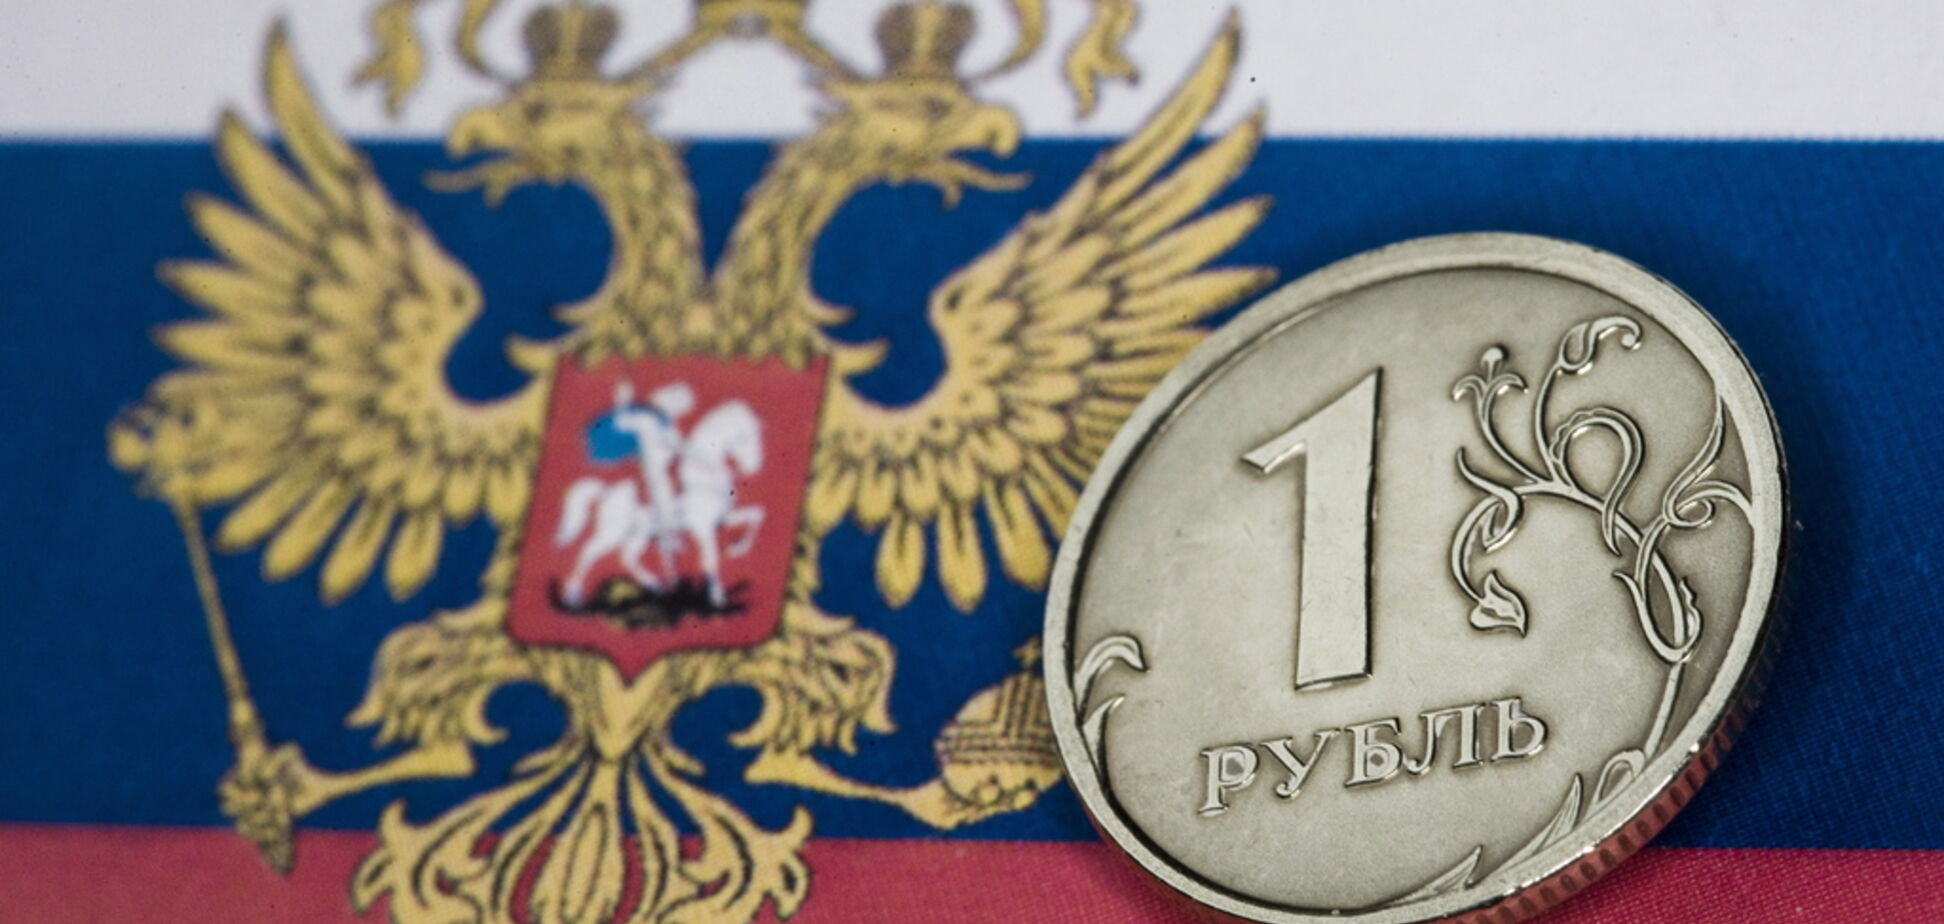 Как адские санкции ударили по рублю: появился показательный график